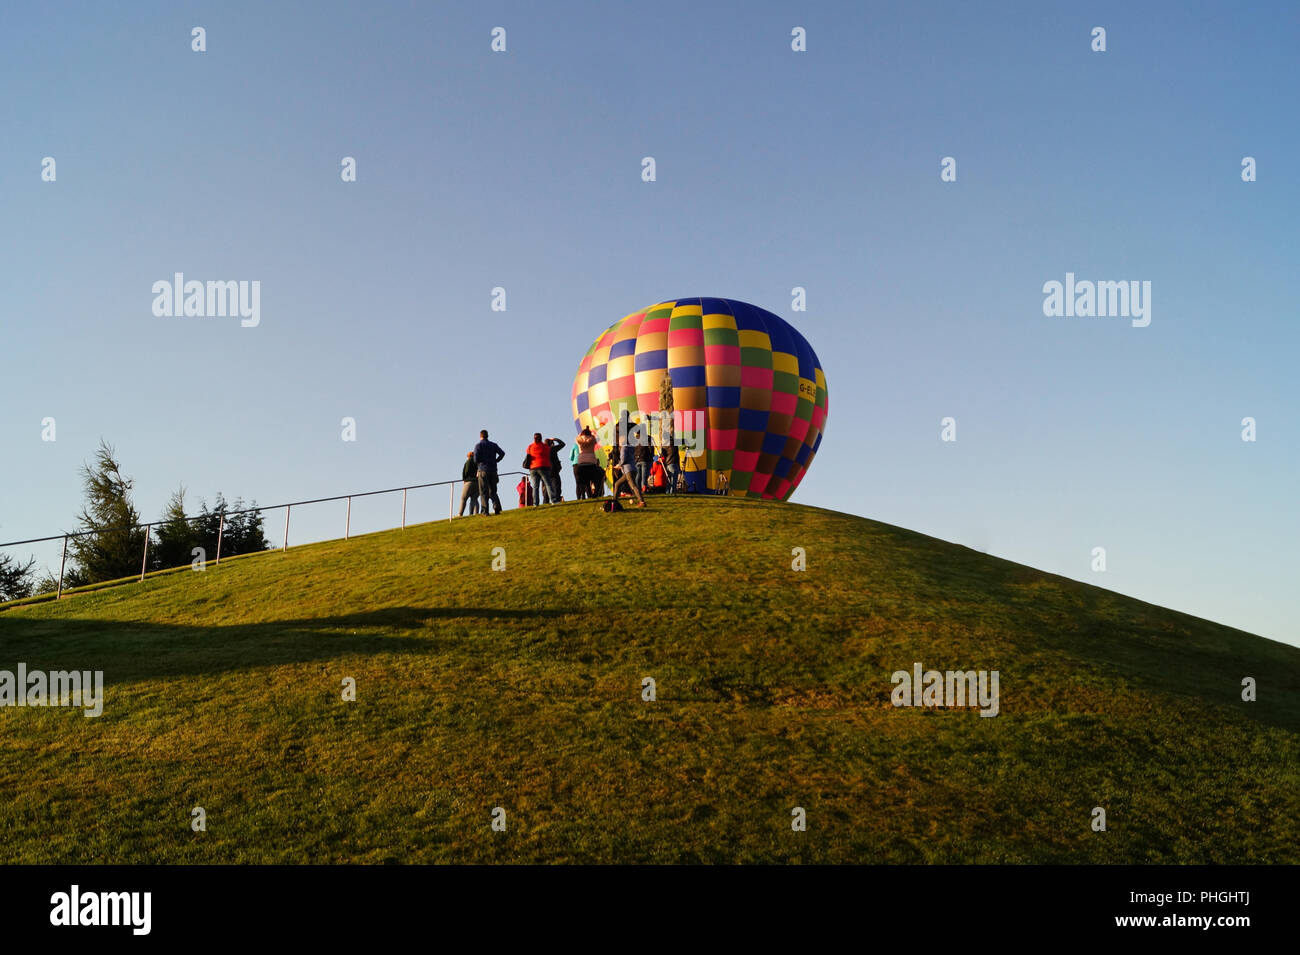 Strathaven Hot Air Balloon Festival 2018 - Piccola città intrattenimento, palloncini colorati, fino in alto e lontano Foto Stock